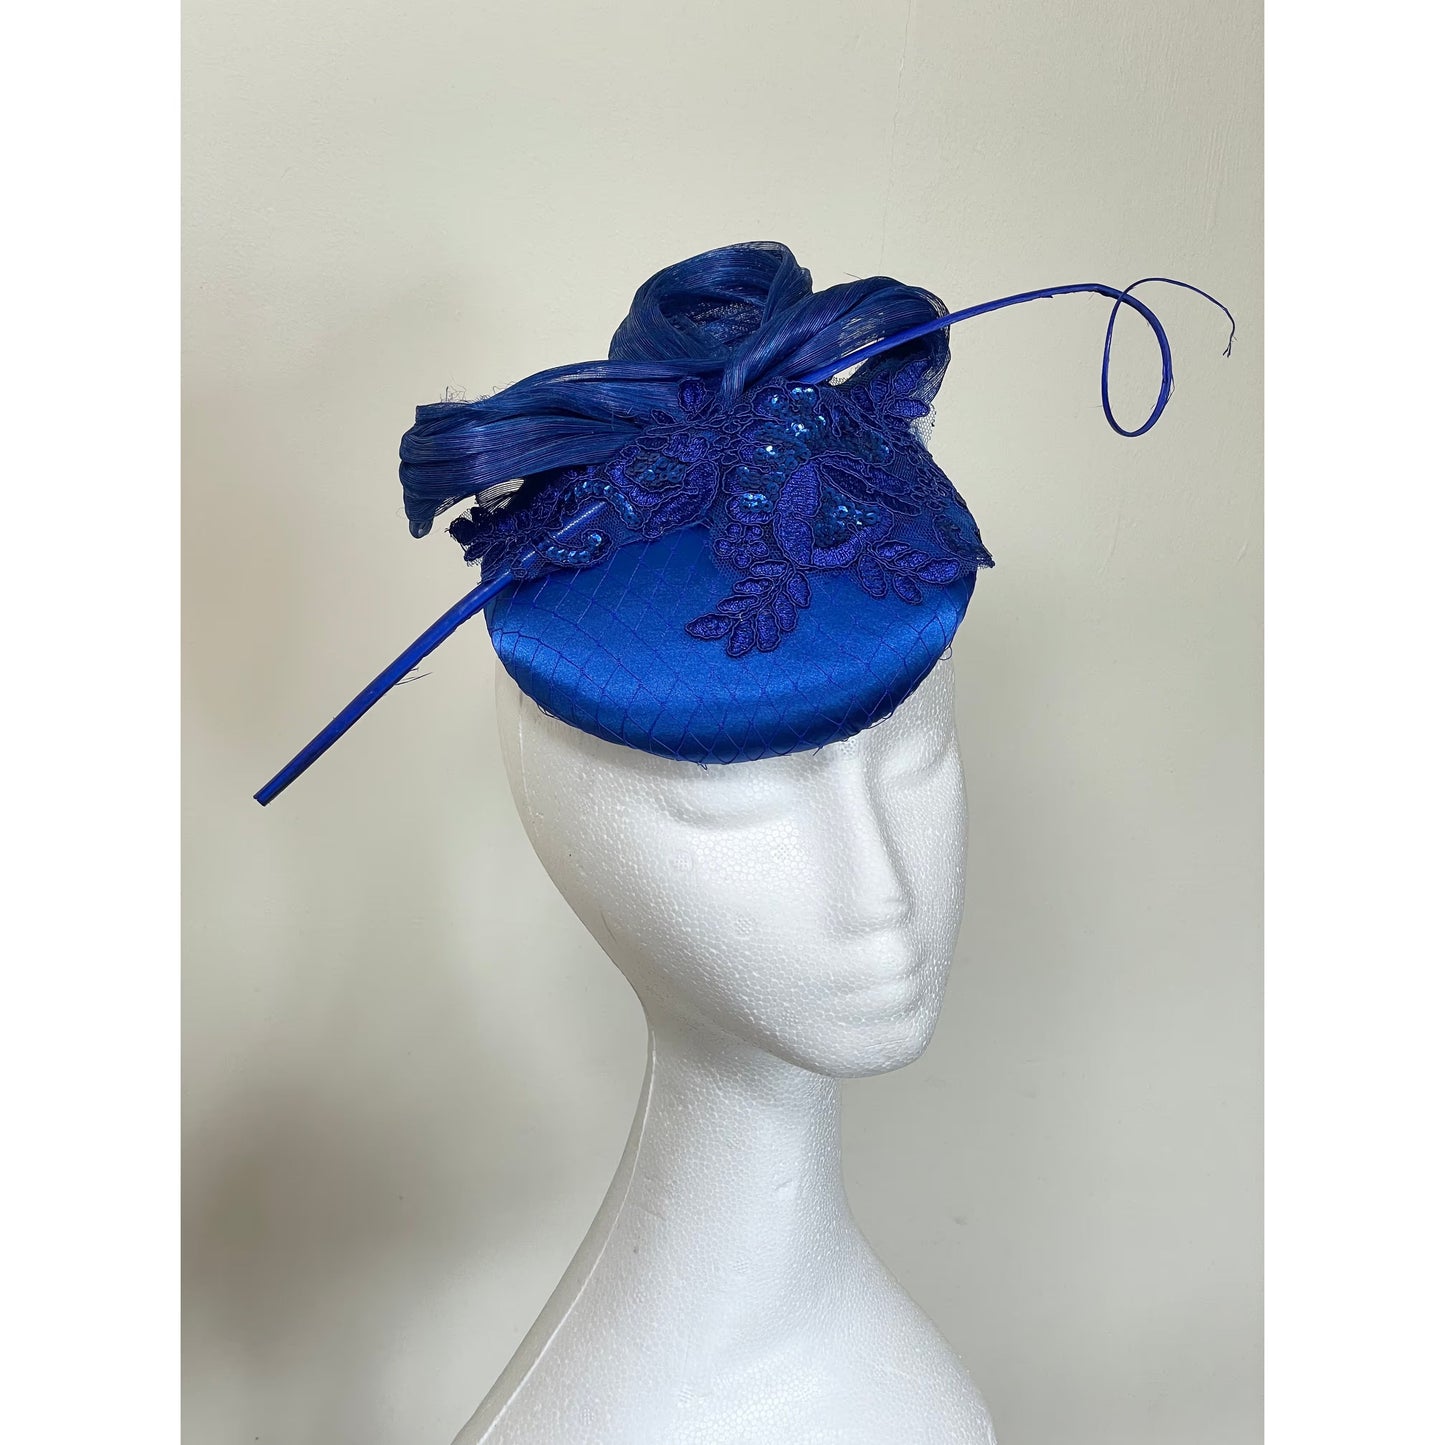 Royal blue lace trim headpiece